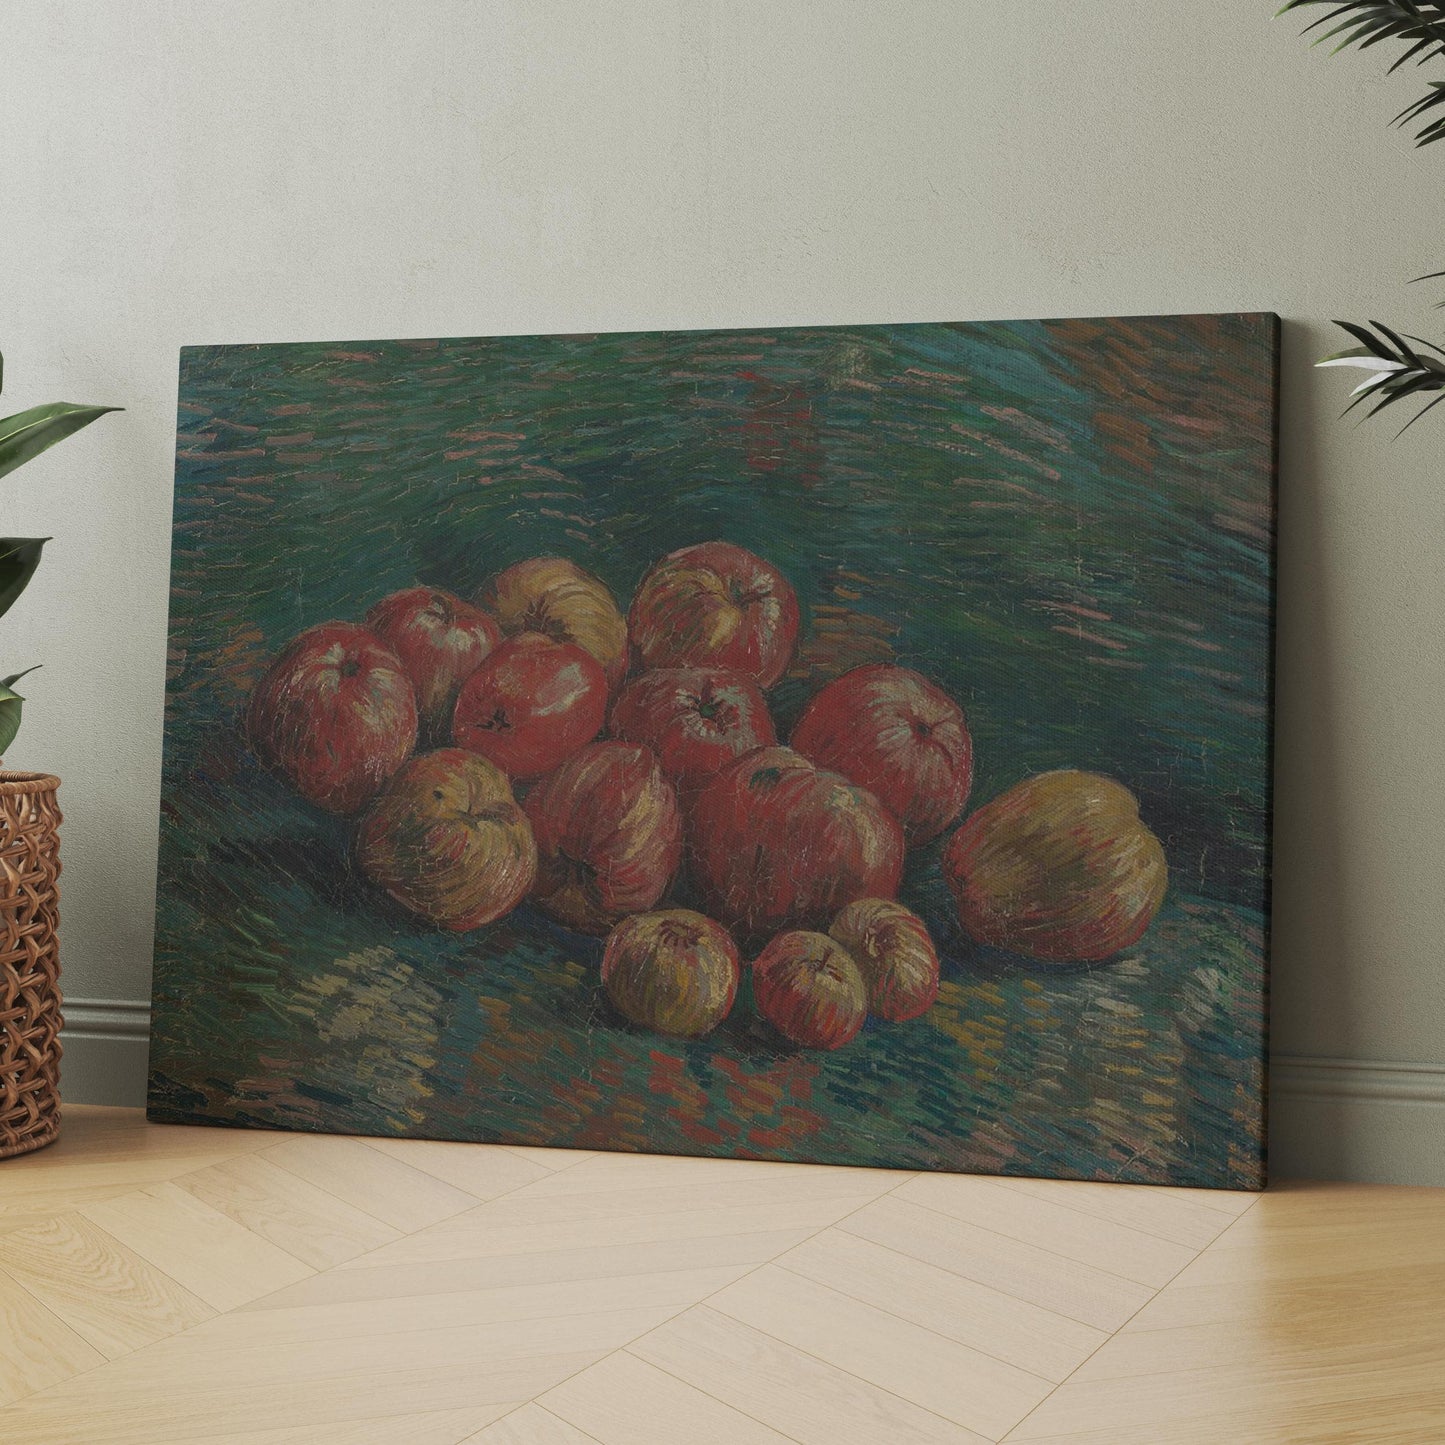 Apples (1887) by Van Gogh